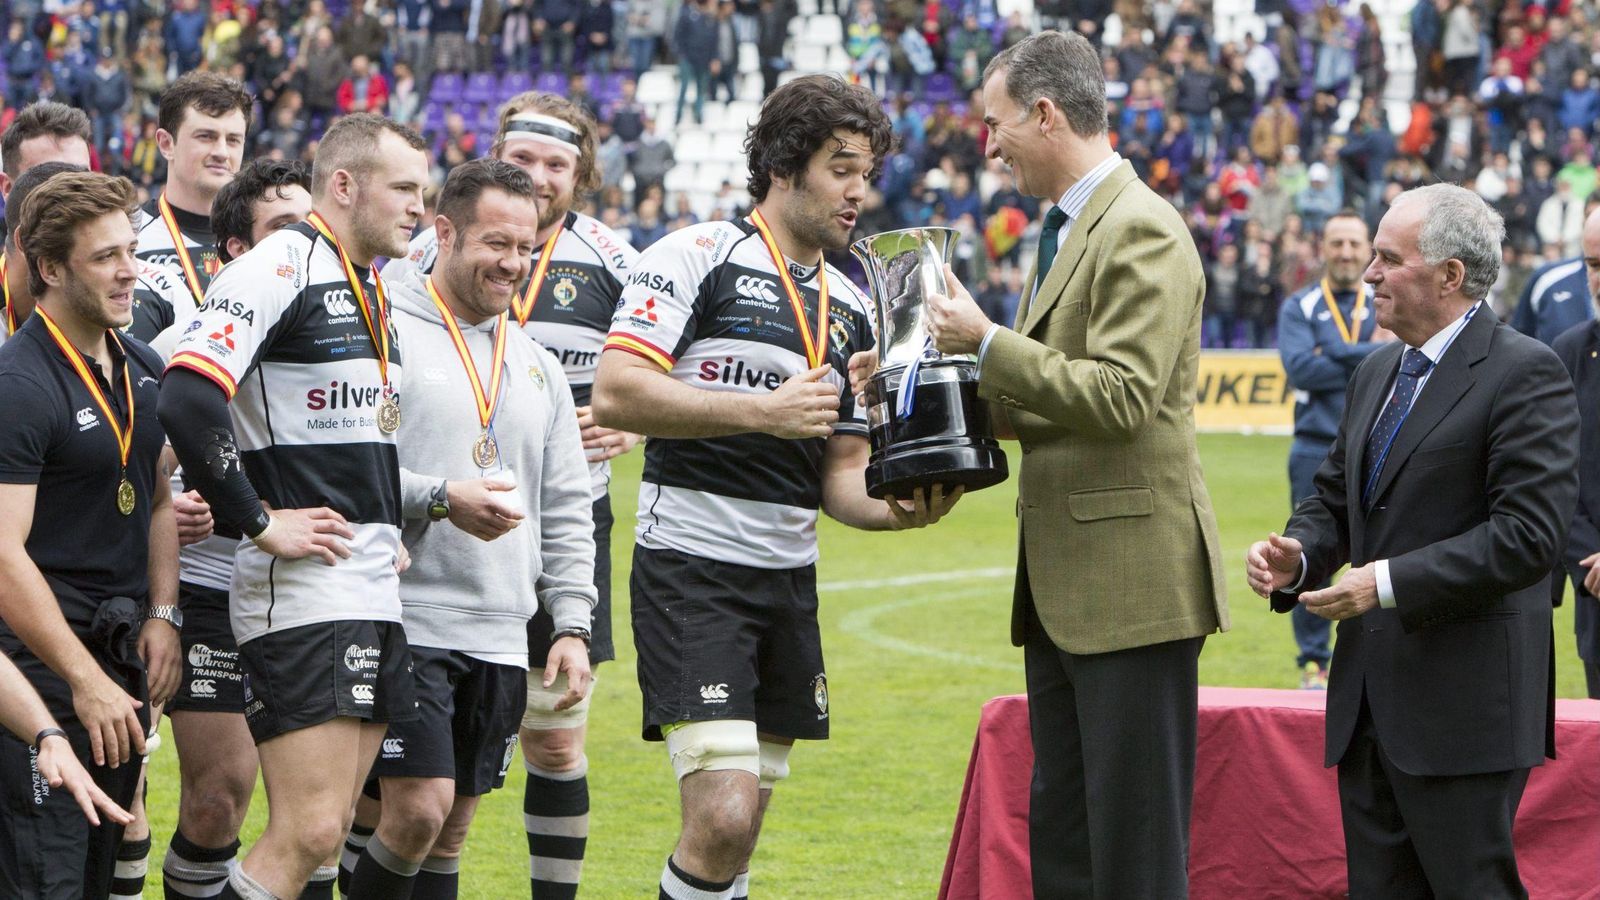 Foto: El rey Felipe entrega la Copa al capitán del Chami (Cordon Press).